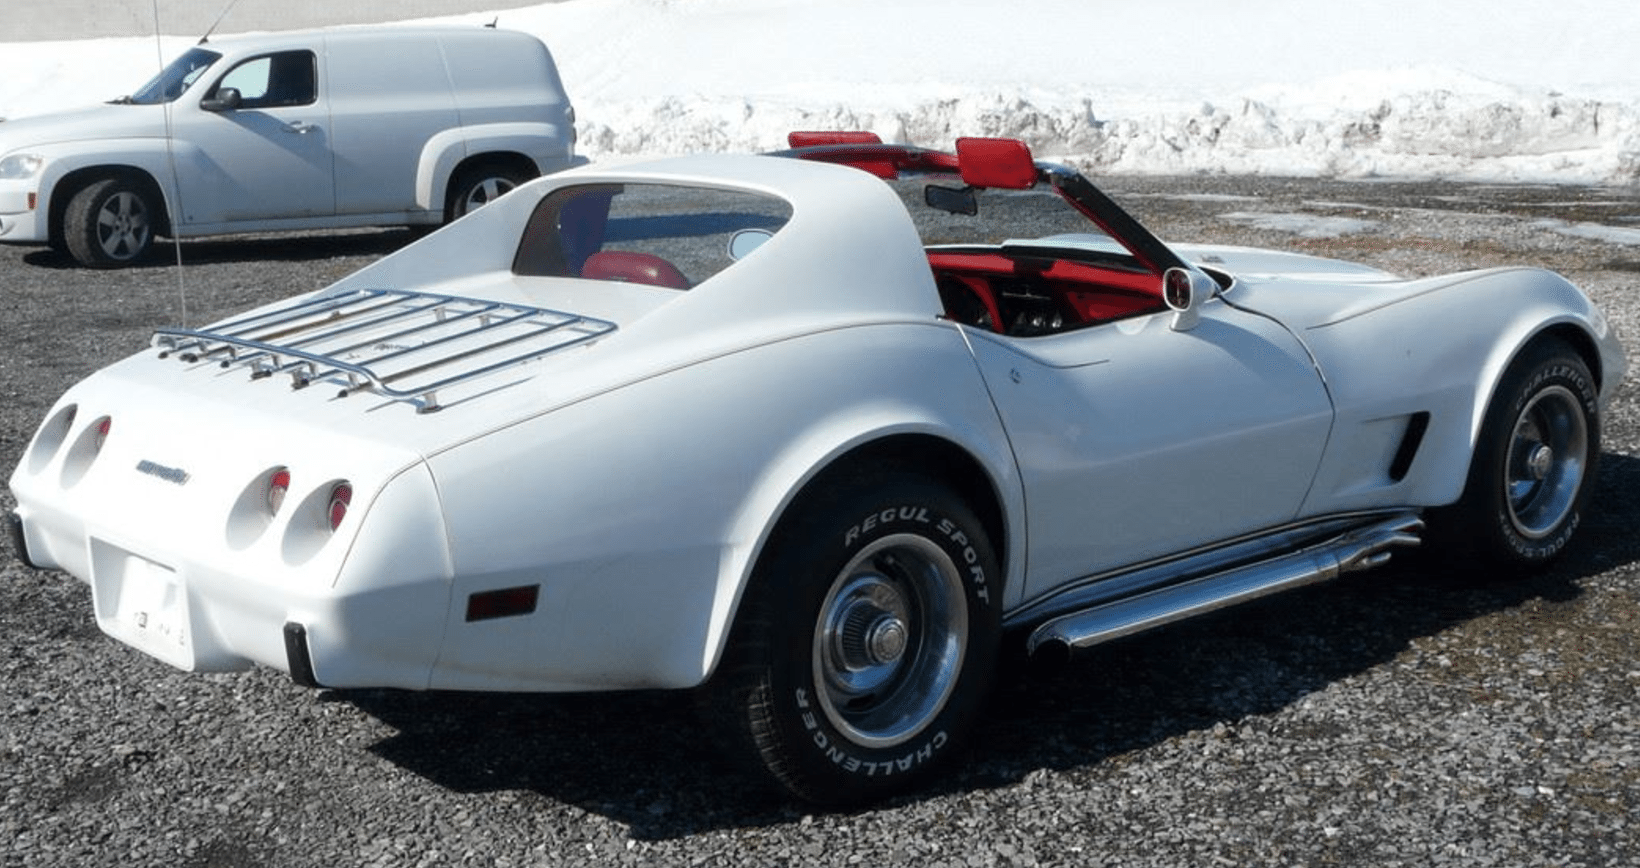 The 1977 Corvette 